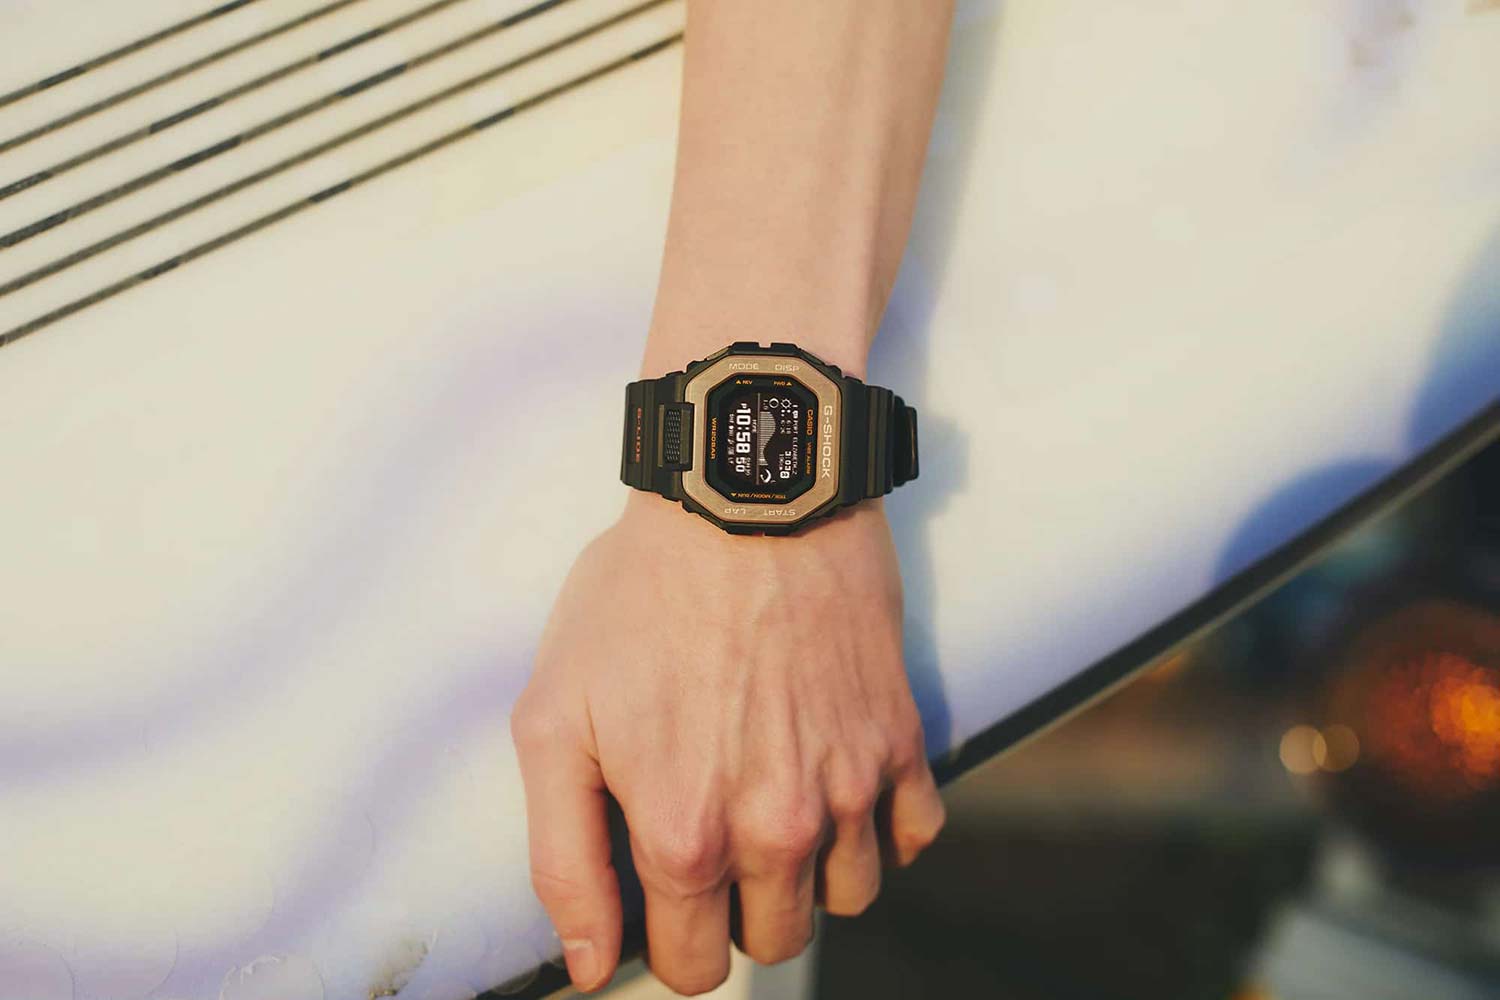 Наручные часы Casio G-SHOCK GBX-100NS-4ER — купить в интернет-магазине  по лучшей цене, отзывы, фото, характеристики, инструкция,  описание